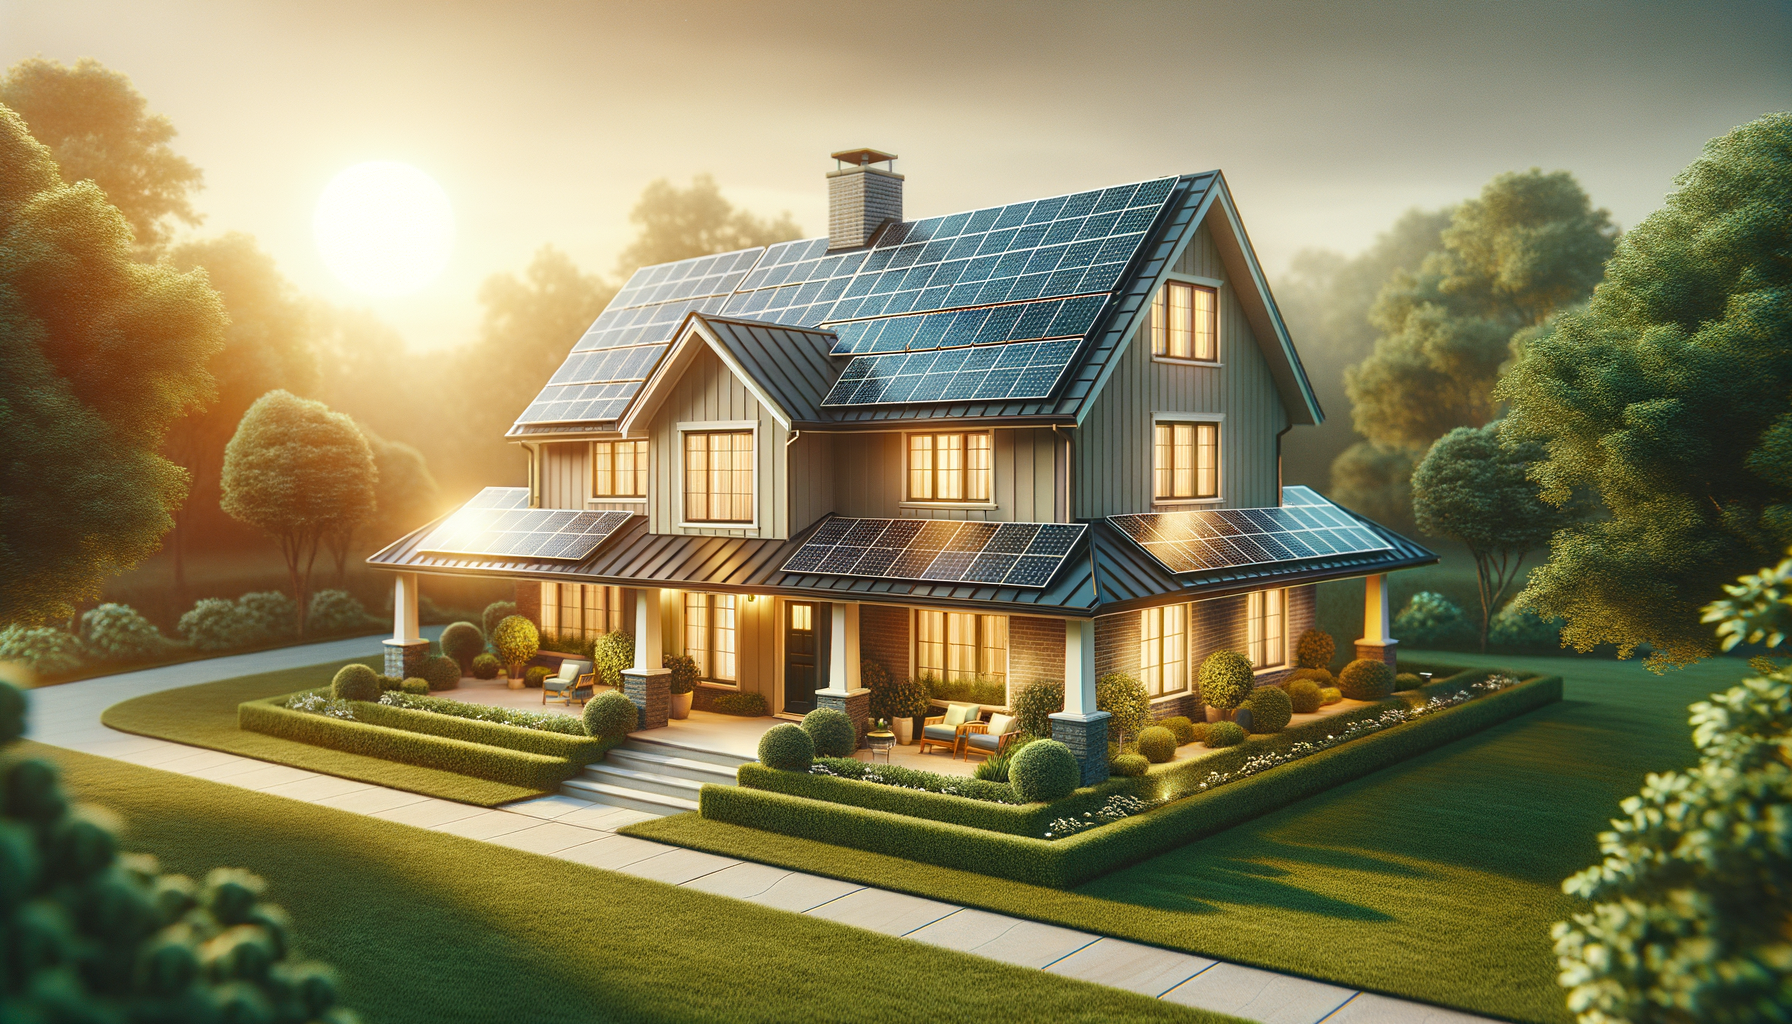 ALT: Solar-powered home